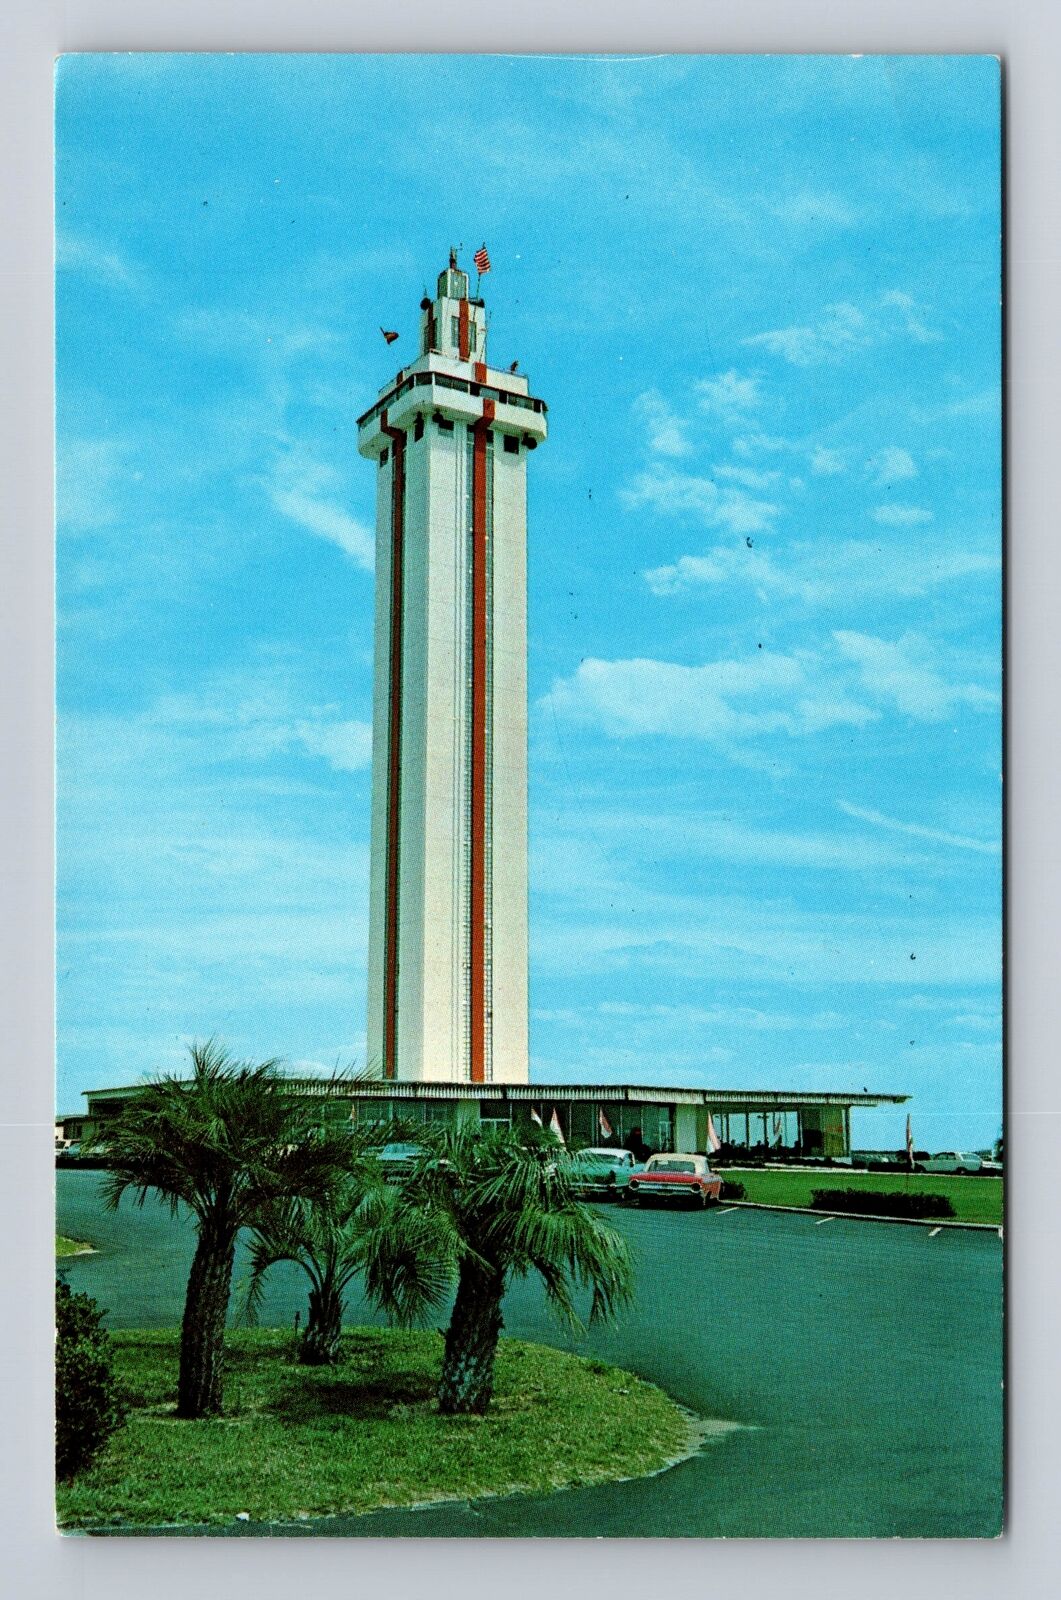 FL- Florida, The Citrus Tower, Antique, Vintage Souvenir Postcard